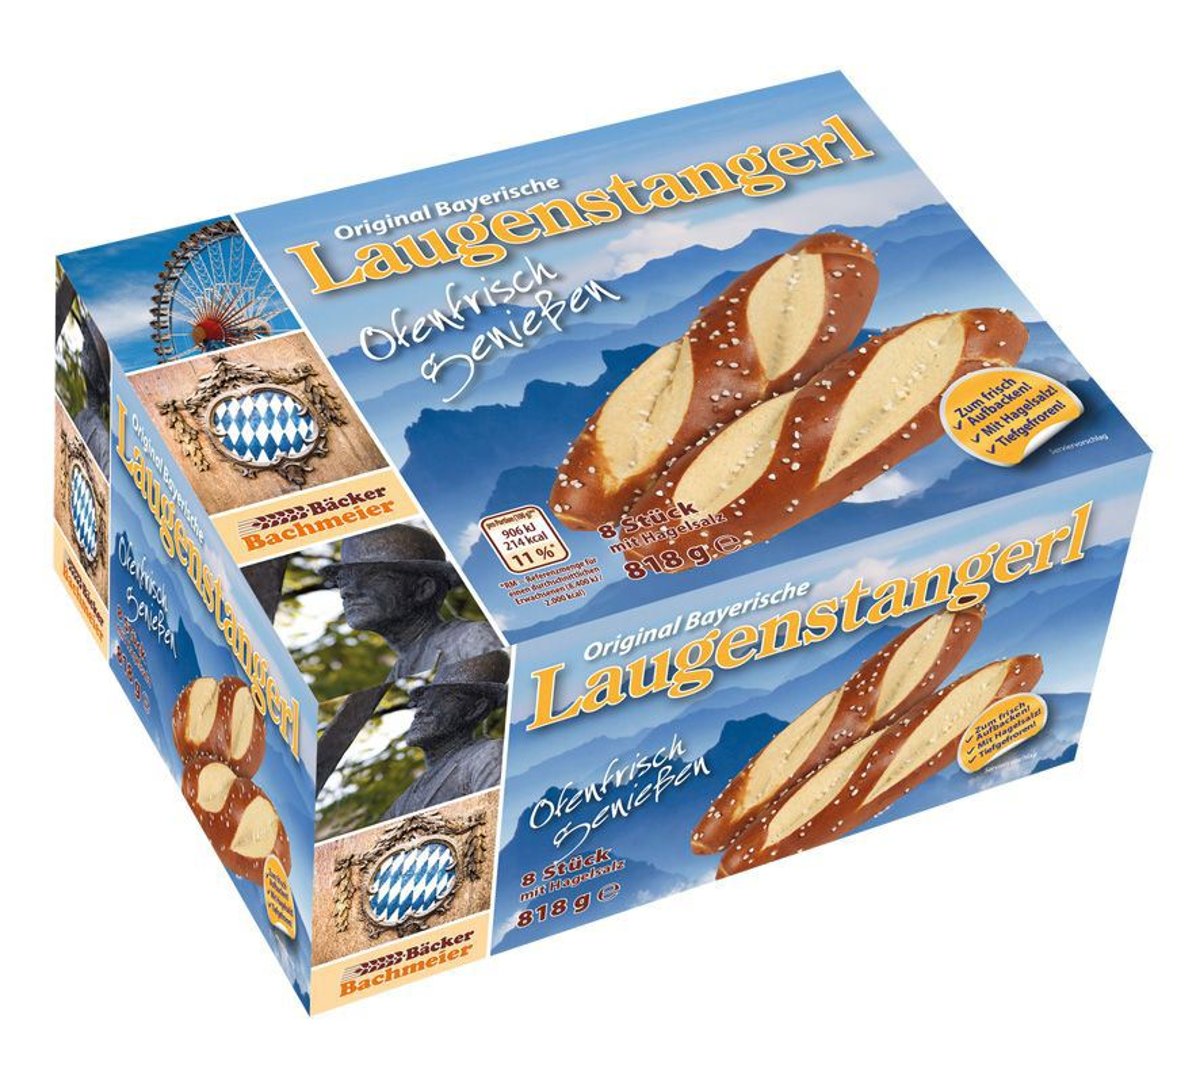 Bäcker Bachmeier - Bayerische Laugenstangerl, tiefgefroren, 8 Stück à 100 g & 18 g Hagelsalz - 818 g Schachtel